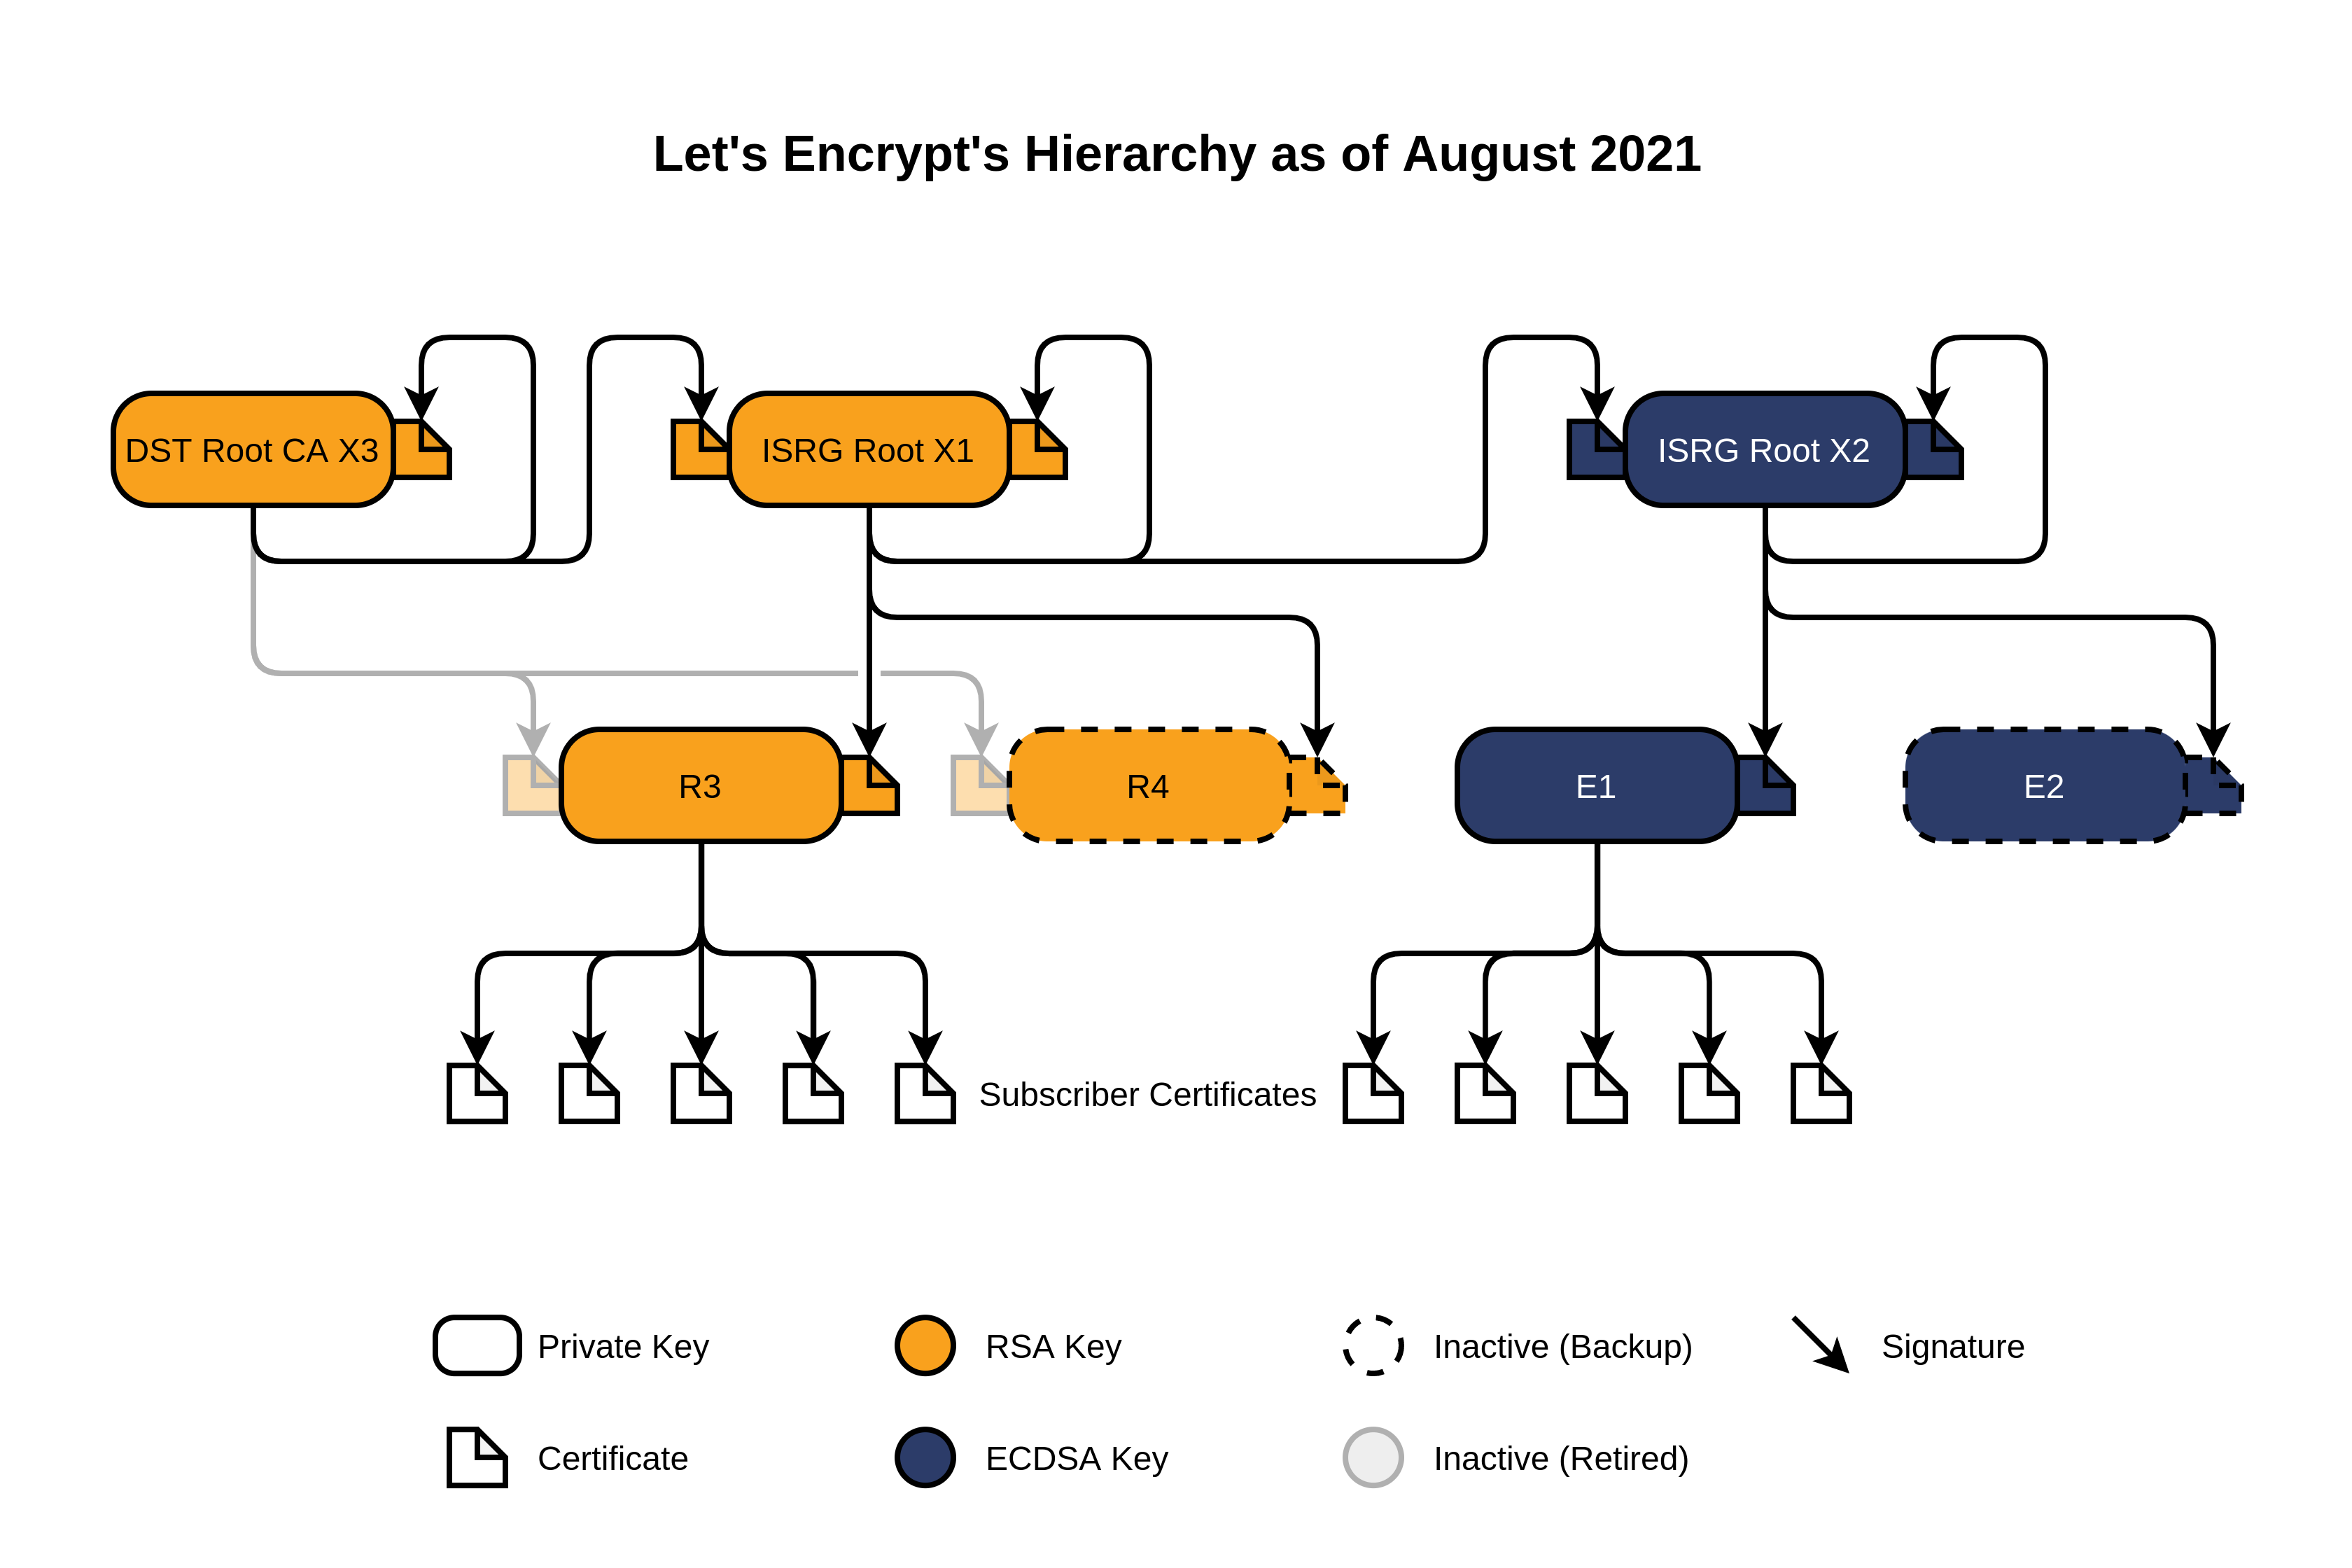 Иерархия сертификатов Let's Encrypt